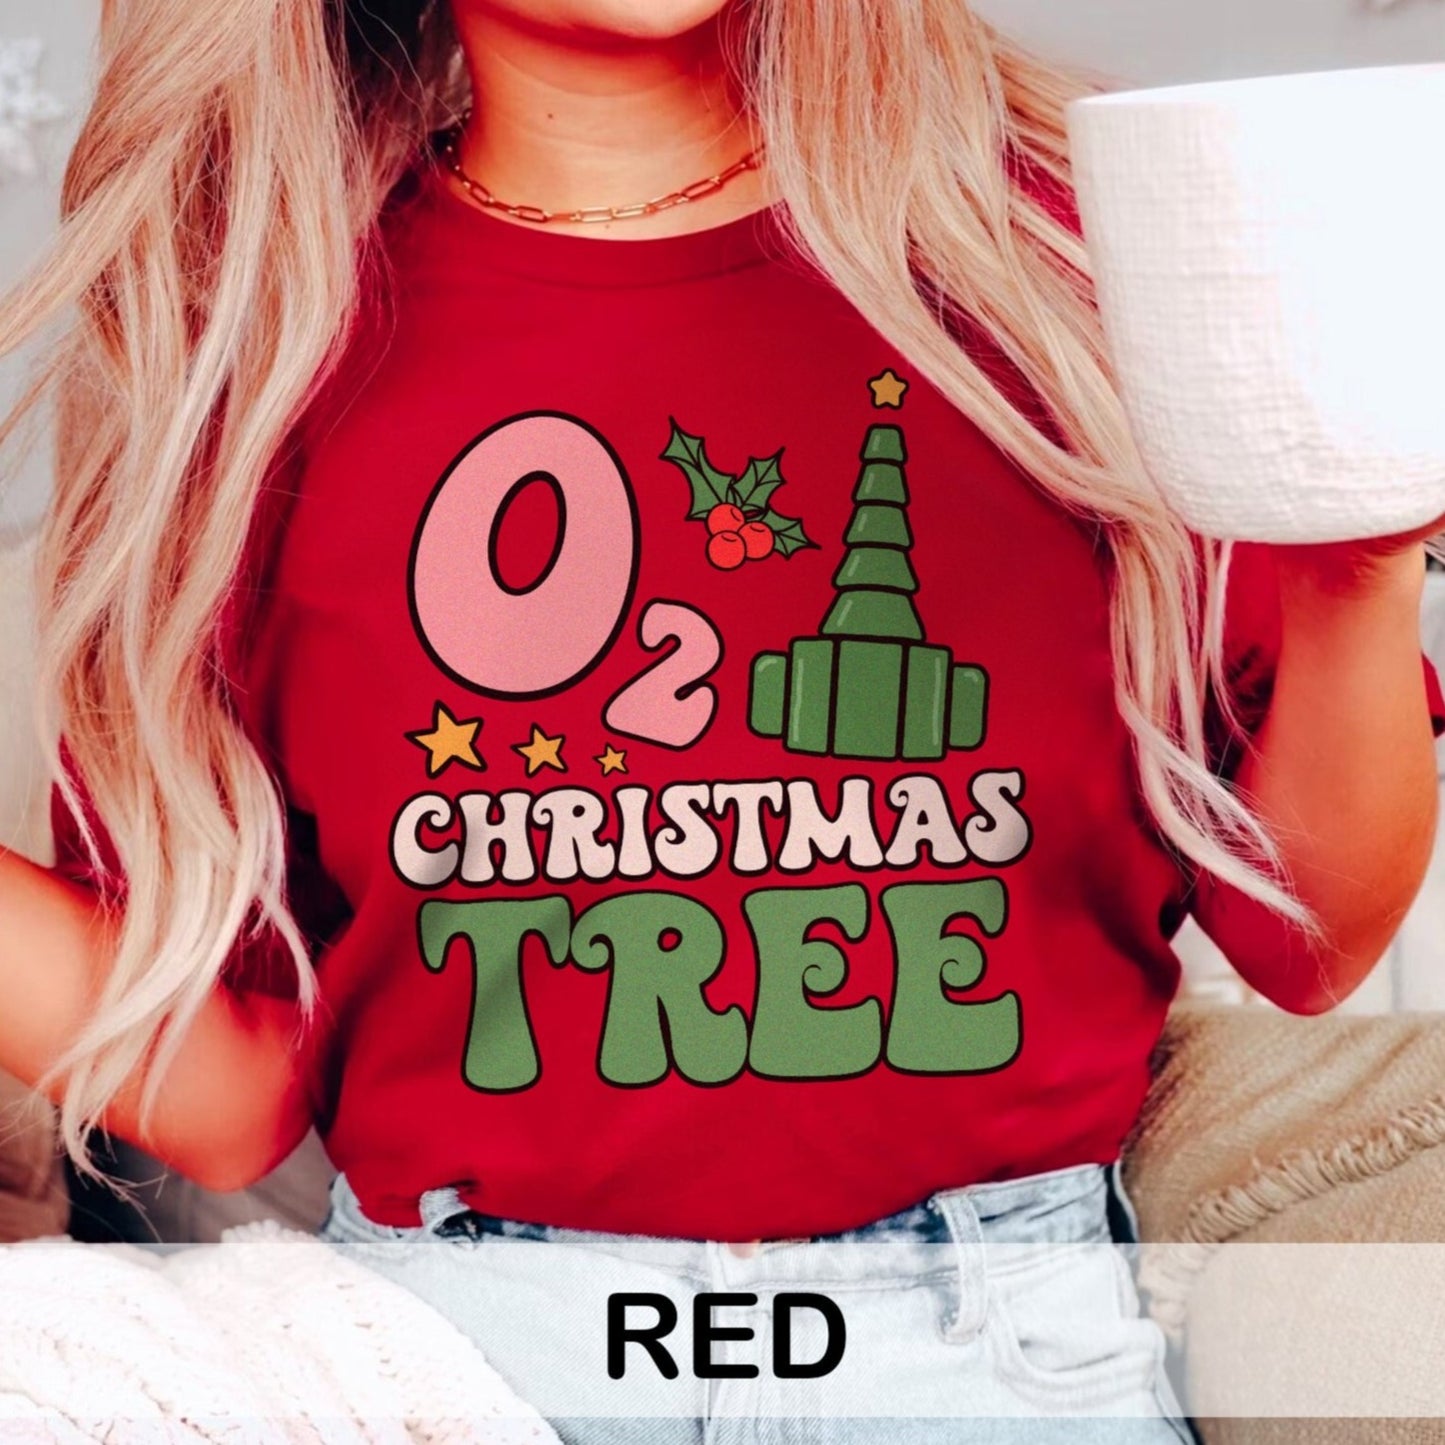 O2 Christmas Tree T-Shirt